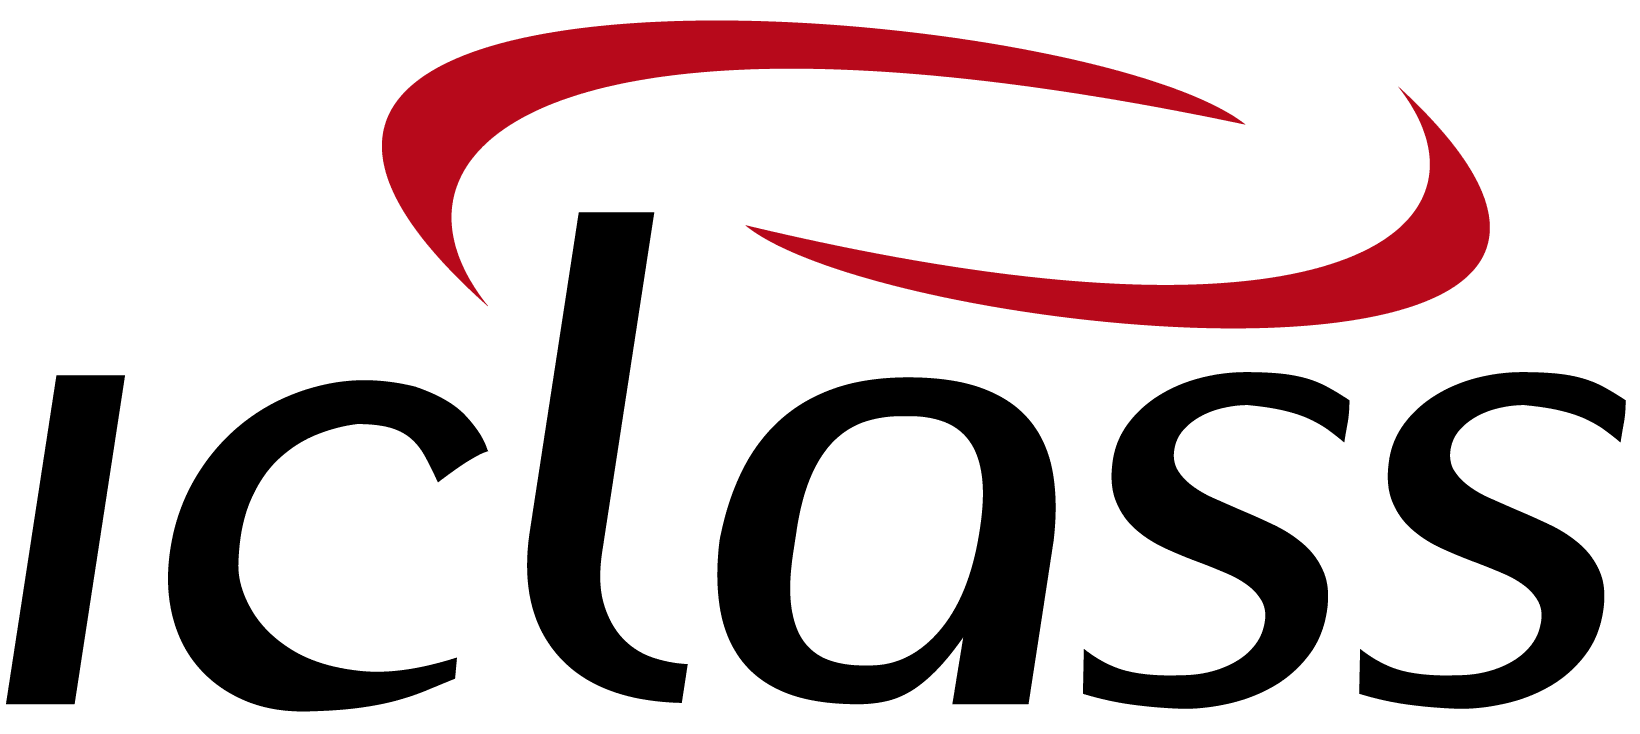 logo IClass Software de Ordem de Serviço Online Software Para Empresas De Monitoramento, CFTV, Alarmes e Proteção Patrimonial